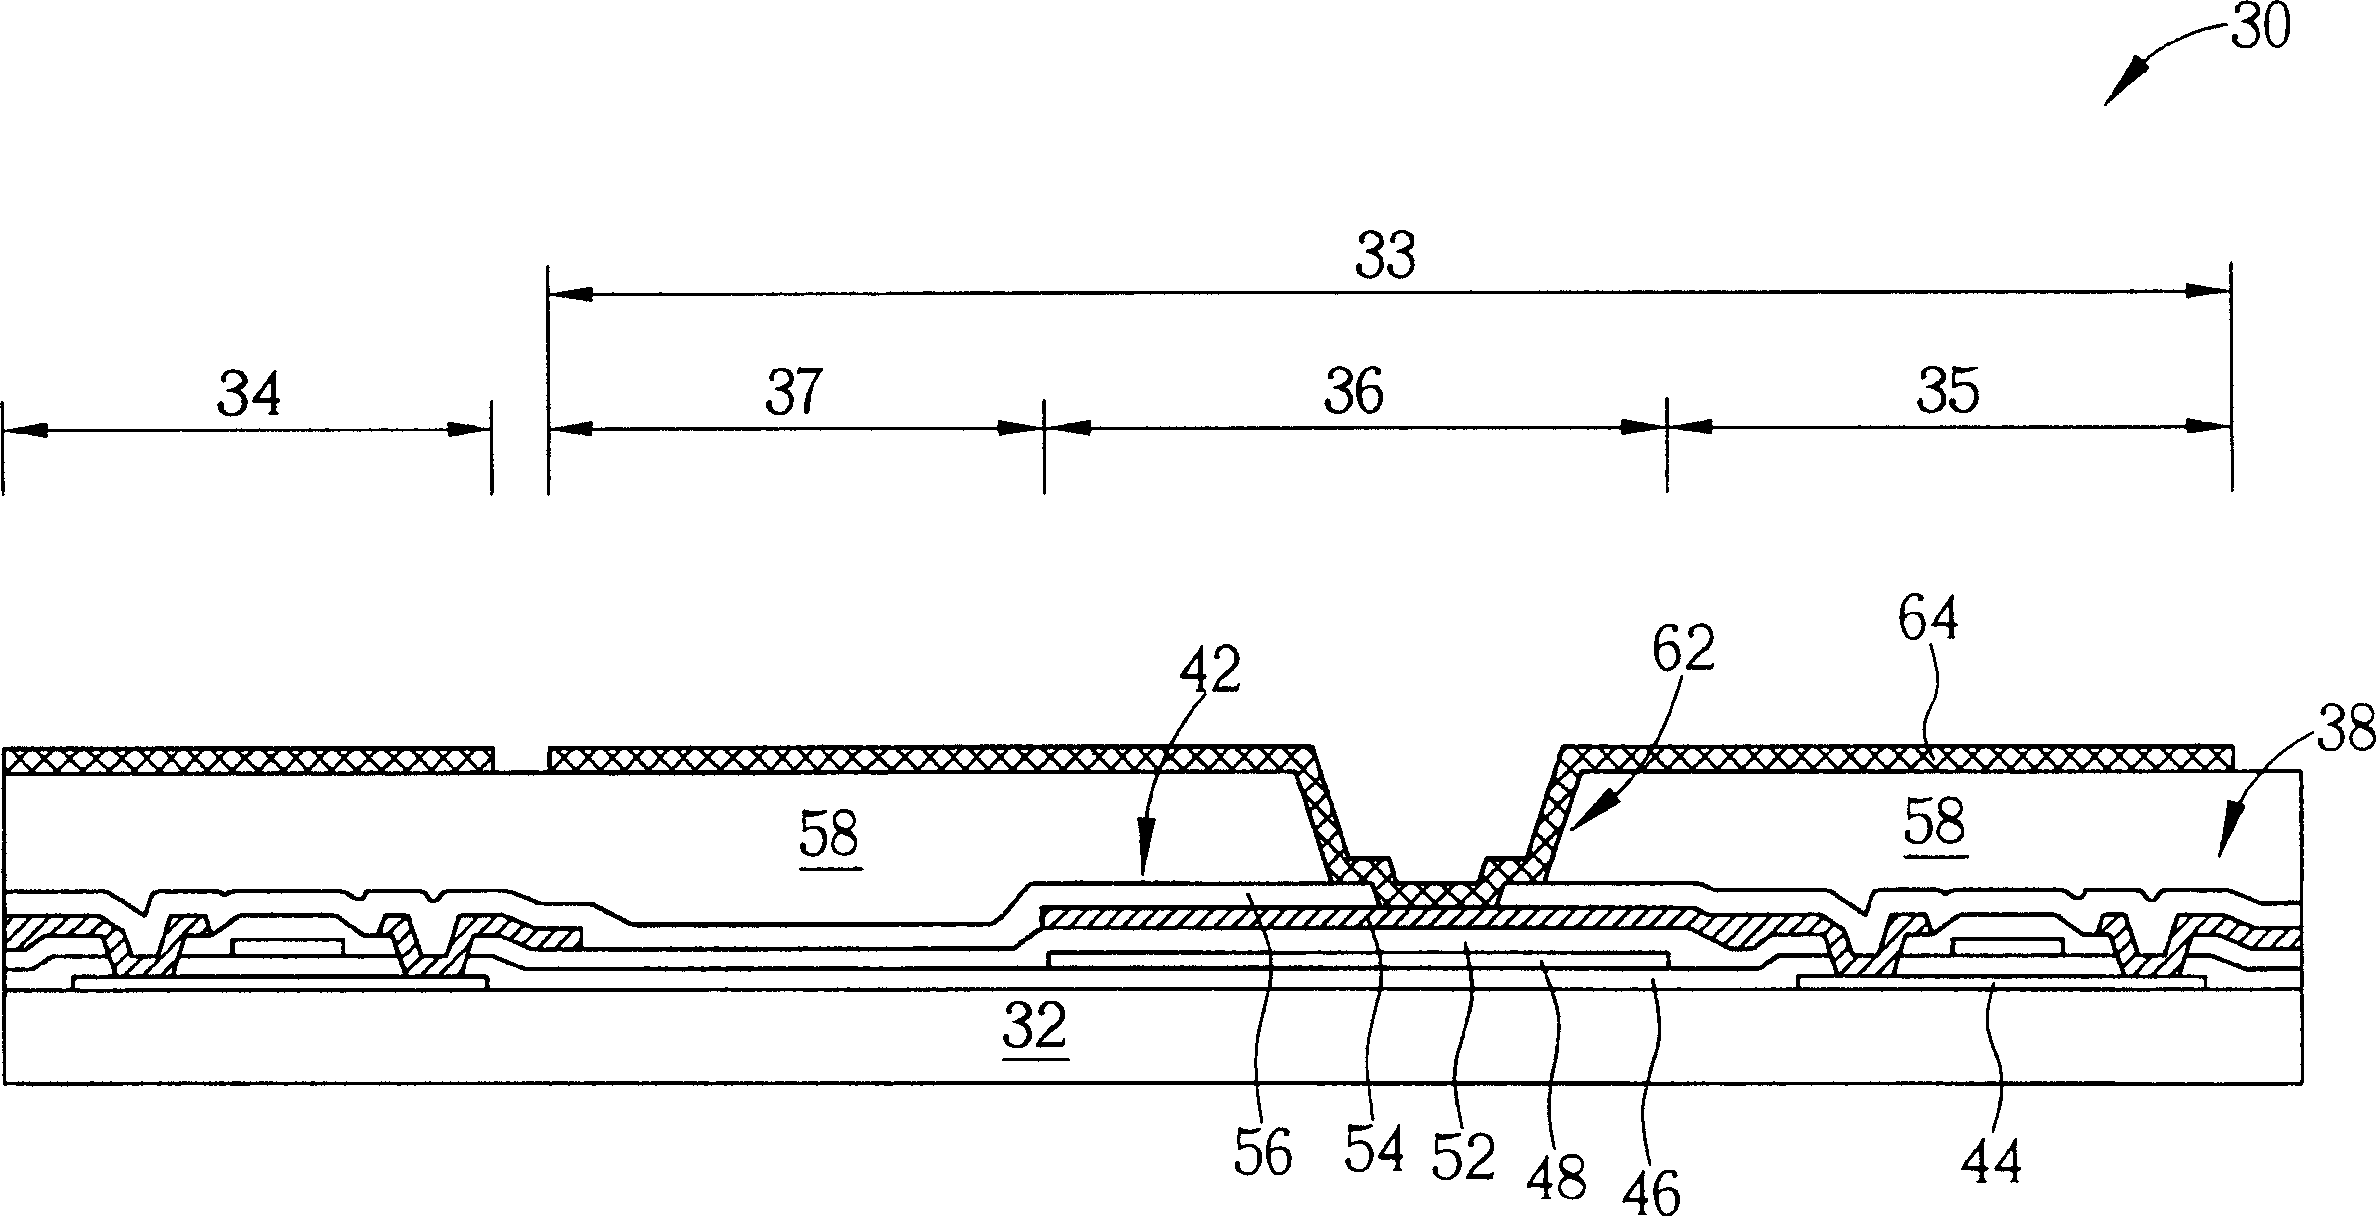 Capacitor arrangement